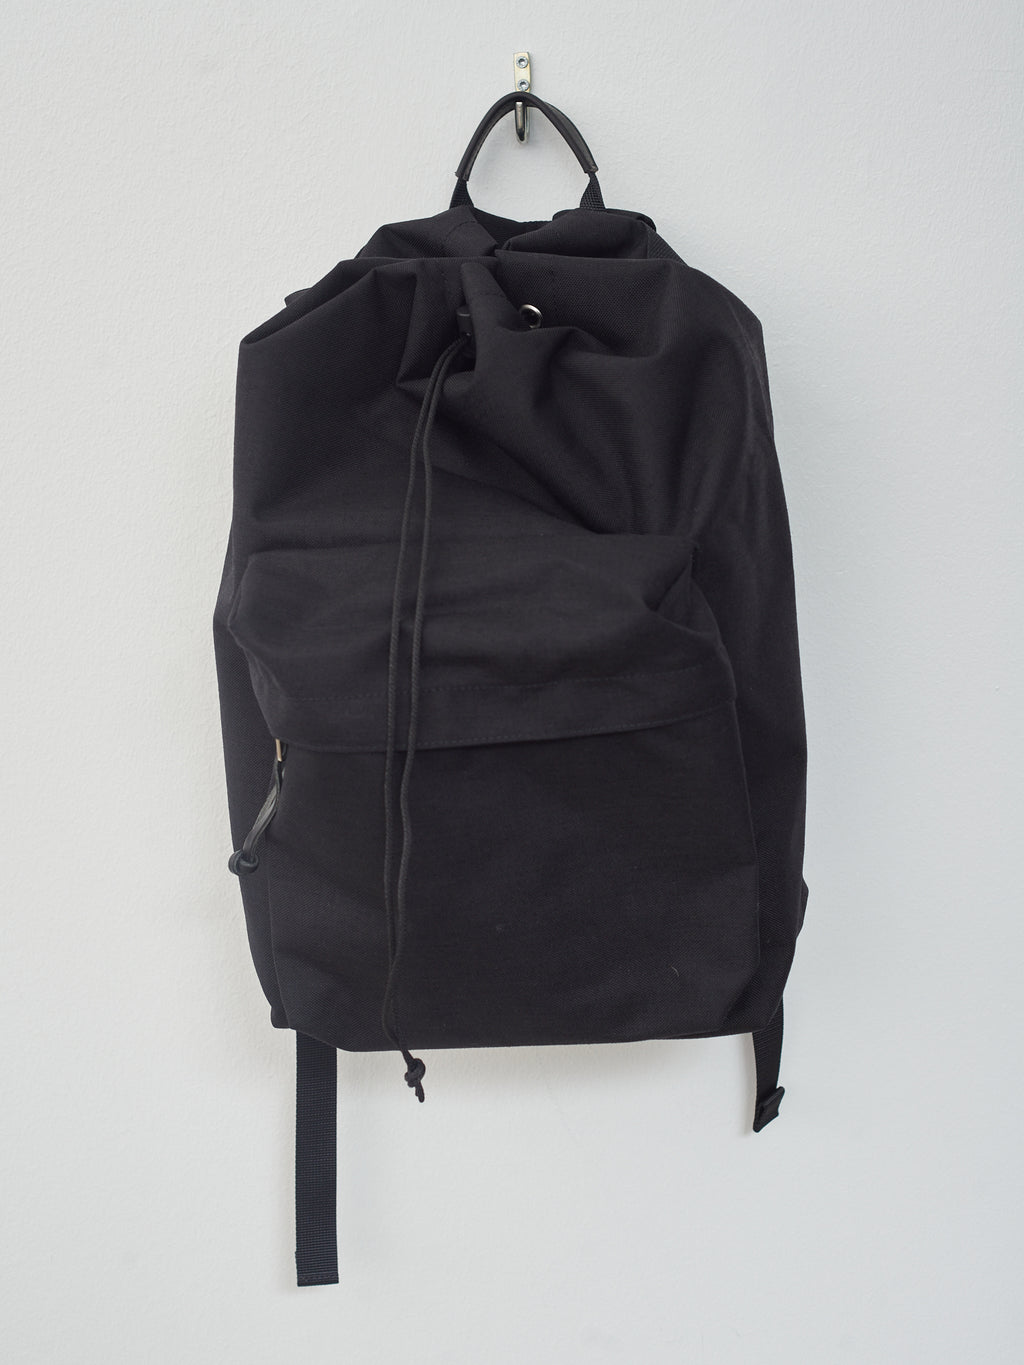 Namu Shop - Aeta Backpack DC M - Black